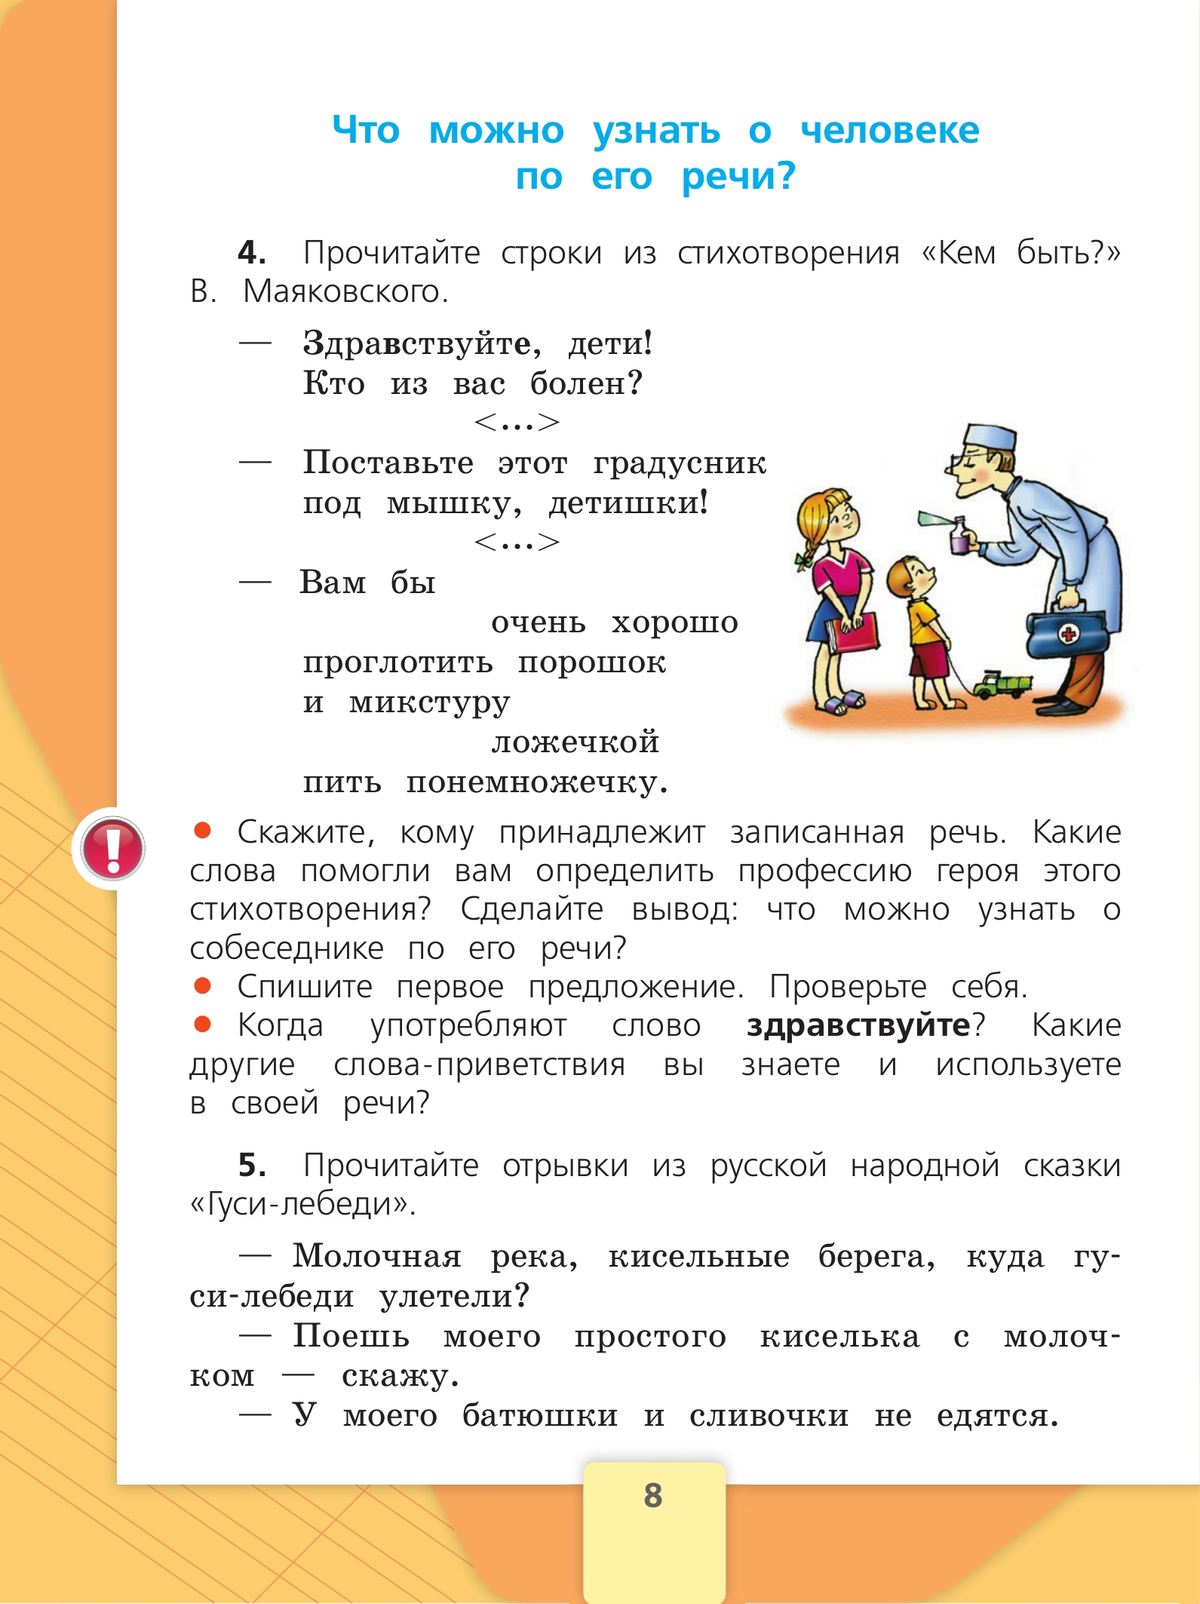 Русский язык. 2 класс. Учебник. В 2 ч. Часть 1 10